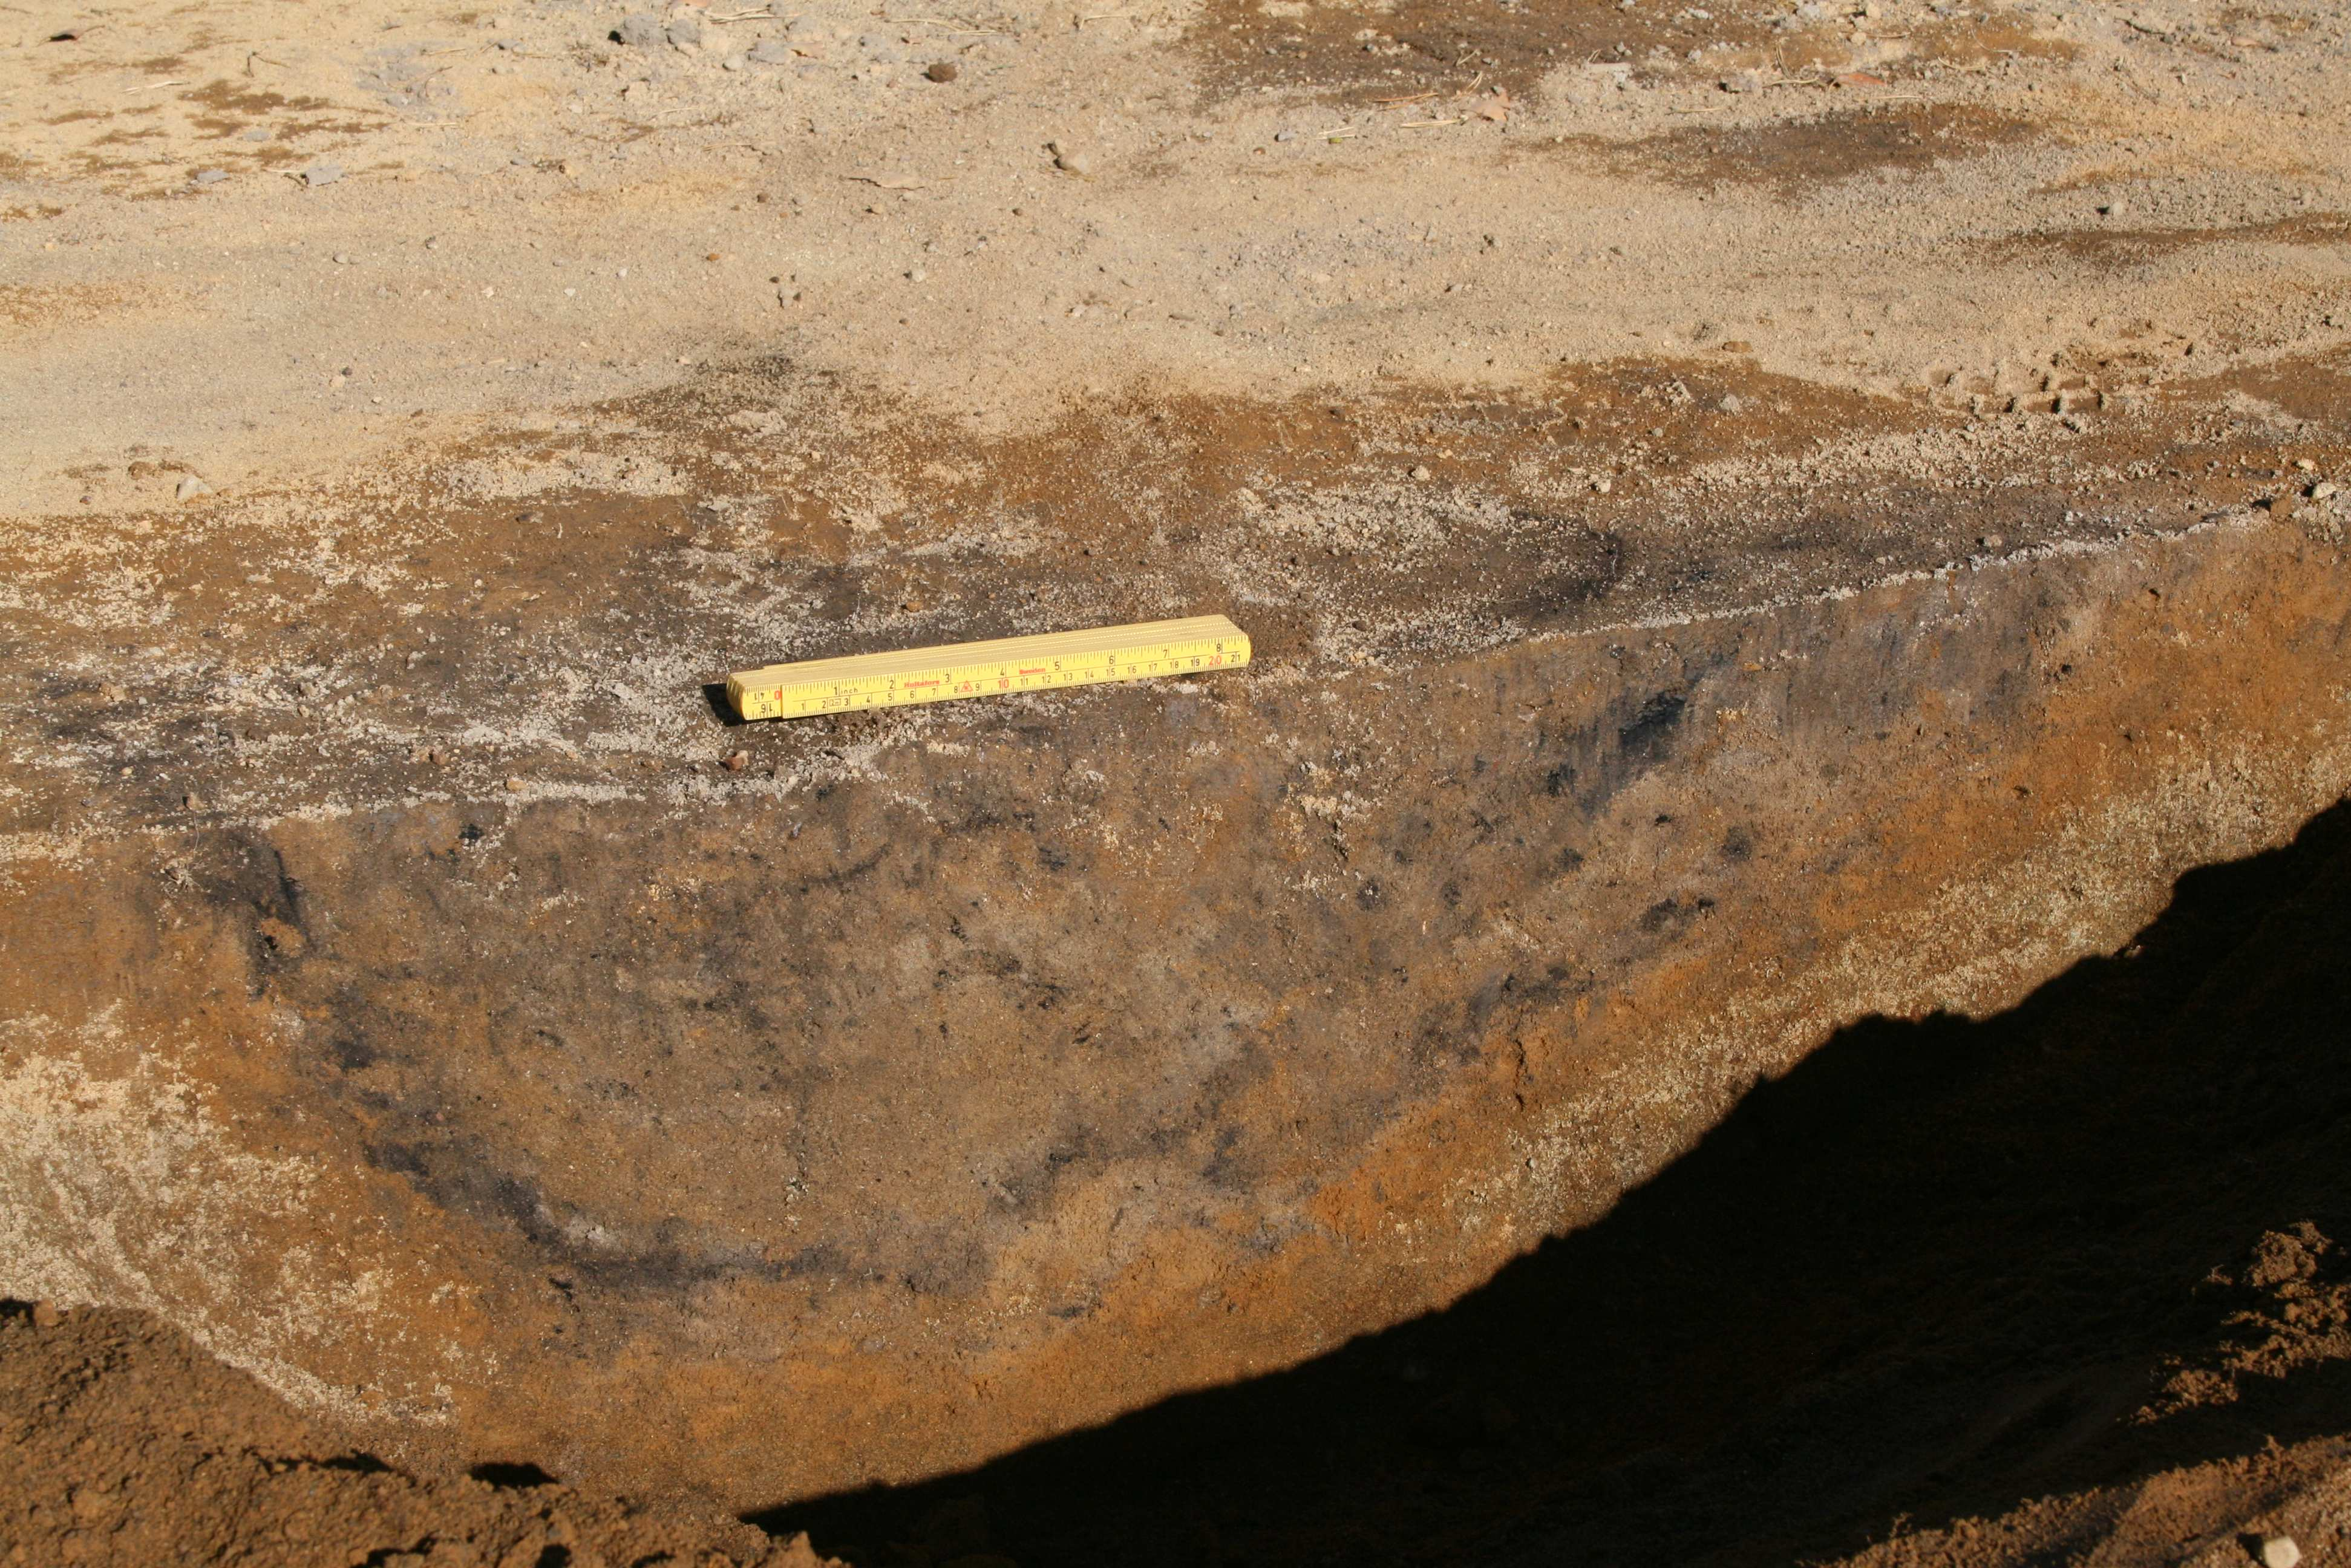 Bilde 5: F1 R133540, nedgravning snittet, sett mot NNØ. F2 Nedgravning Mål: 33x34 cm Dybde 10 cm Datering 890 +/-40 BP Kalibrert 1030-1230 e.kr.